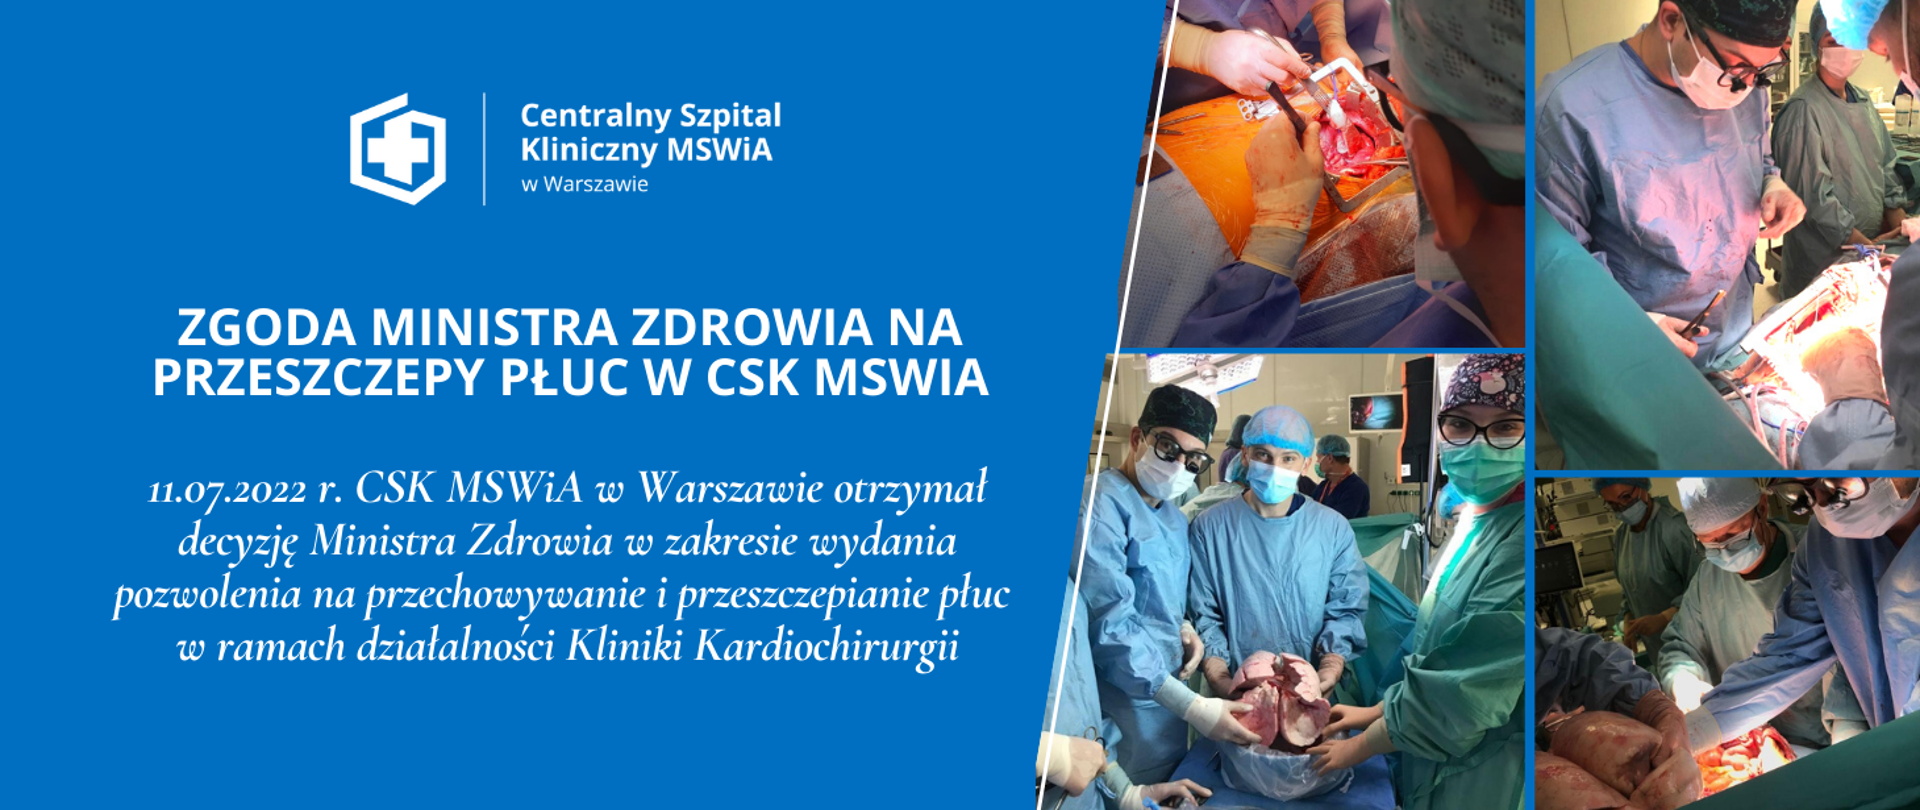 Zgoda Ministra Zdrowia na przeszczepy płuc w CSK MSWiA
